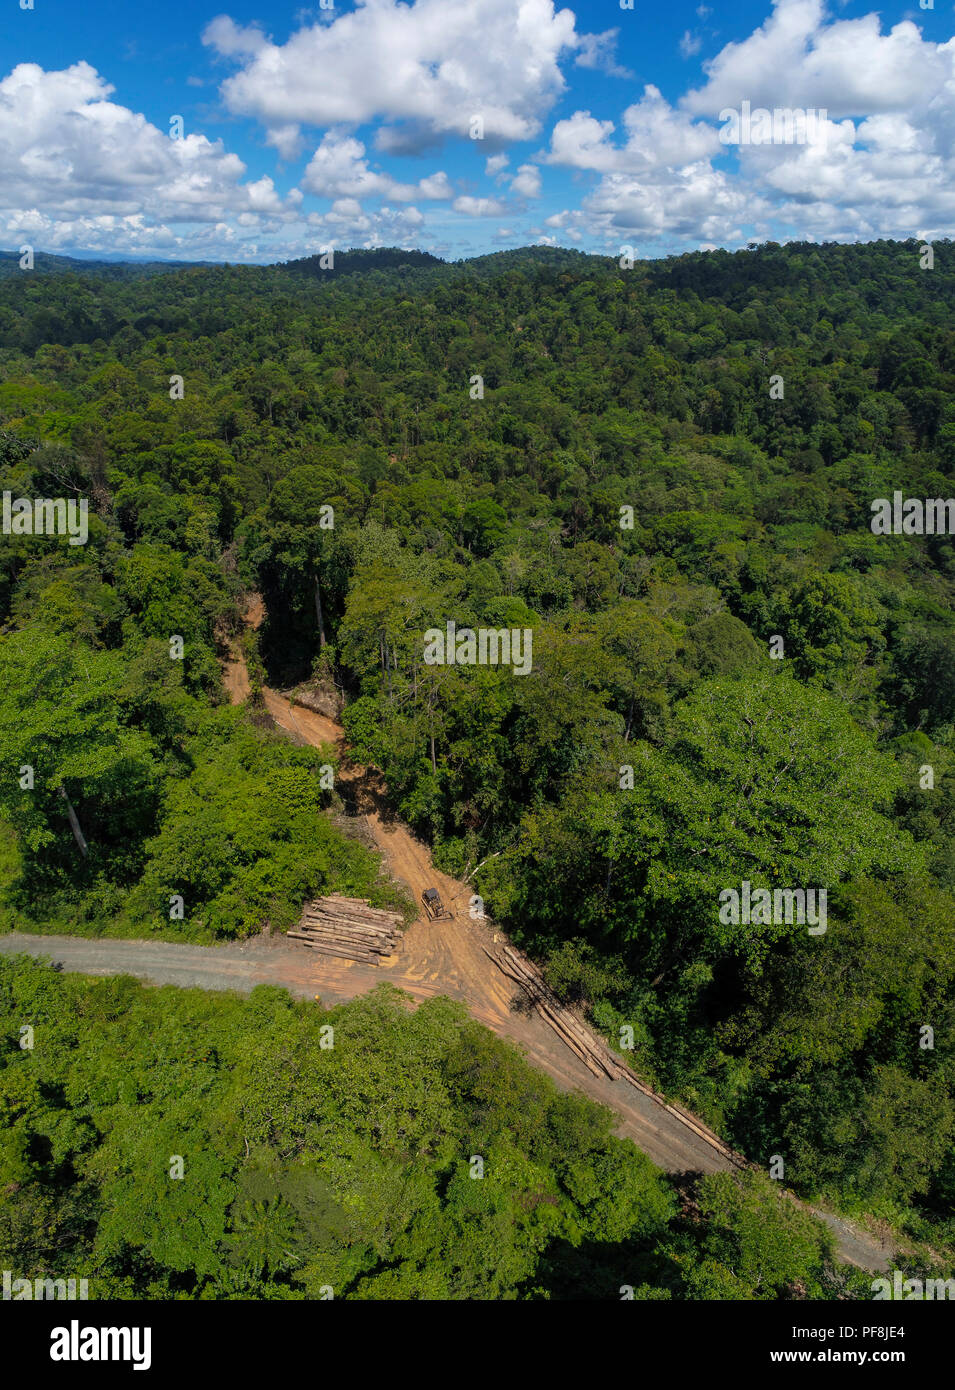 Un chemin d'exploitation commerciale du bois et par la réserve forestière Deramakot, Sabah, Bornéo Malaisien Banque D'Images